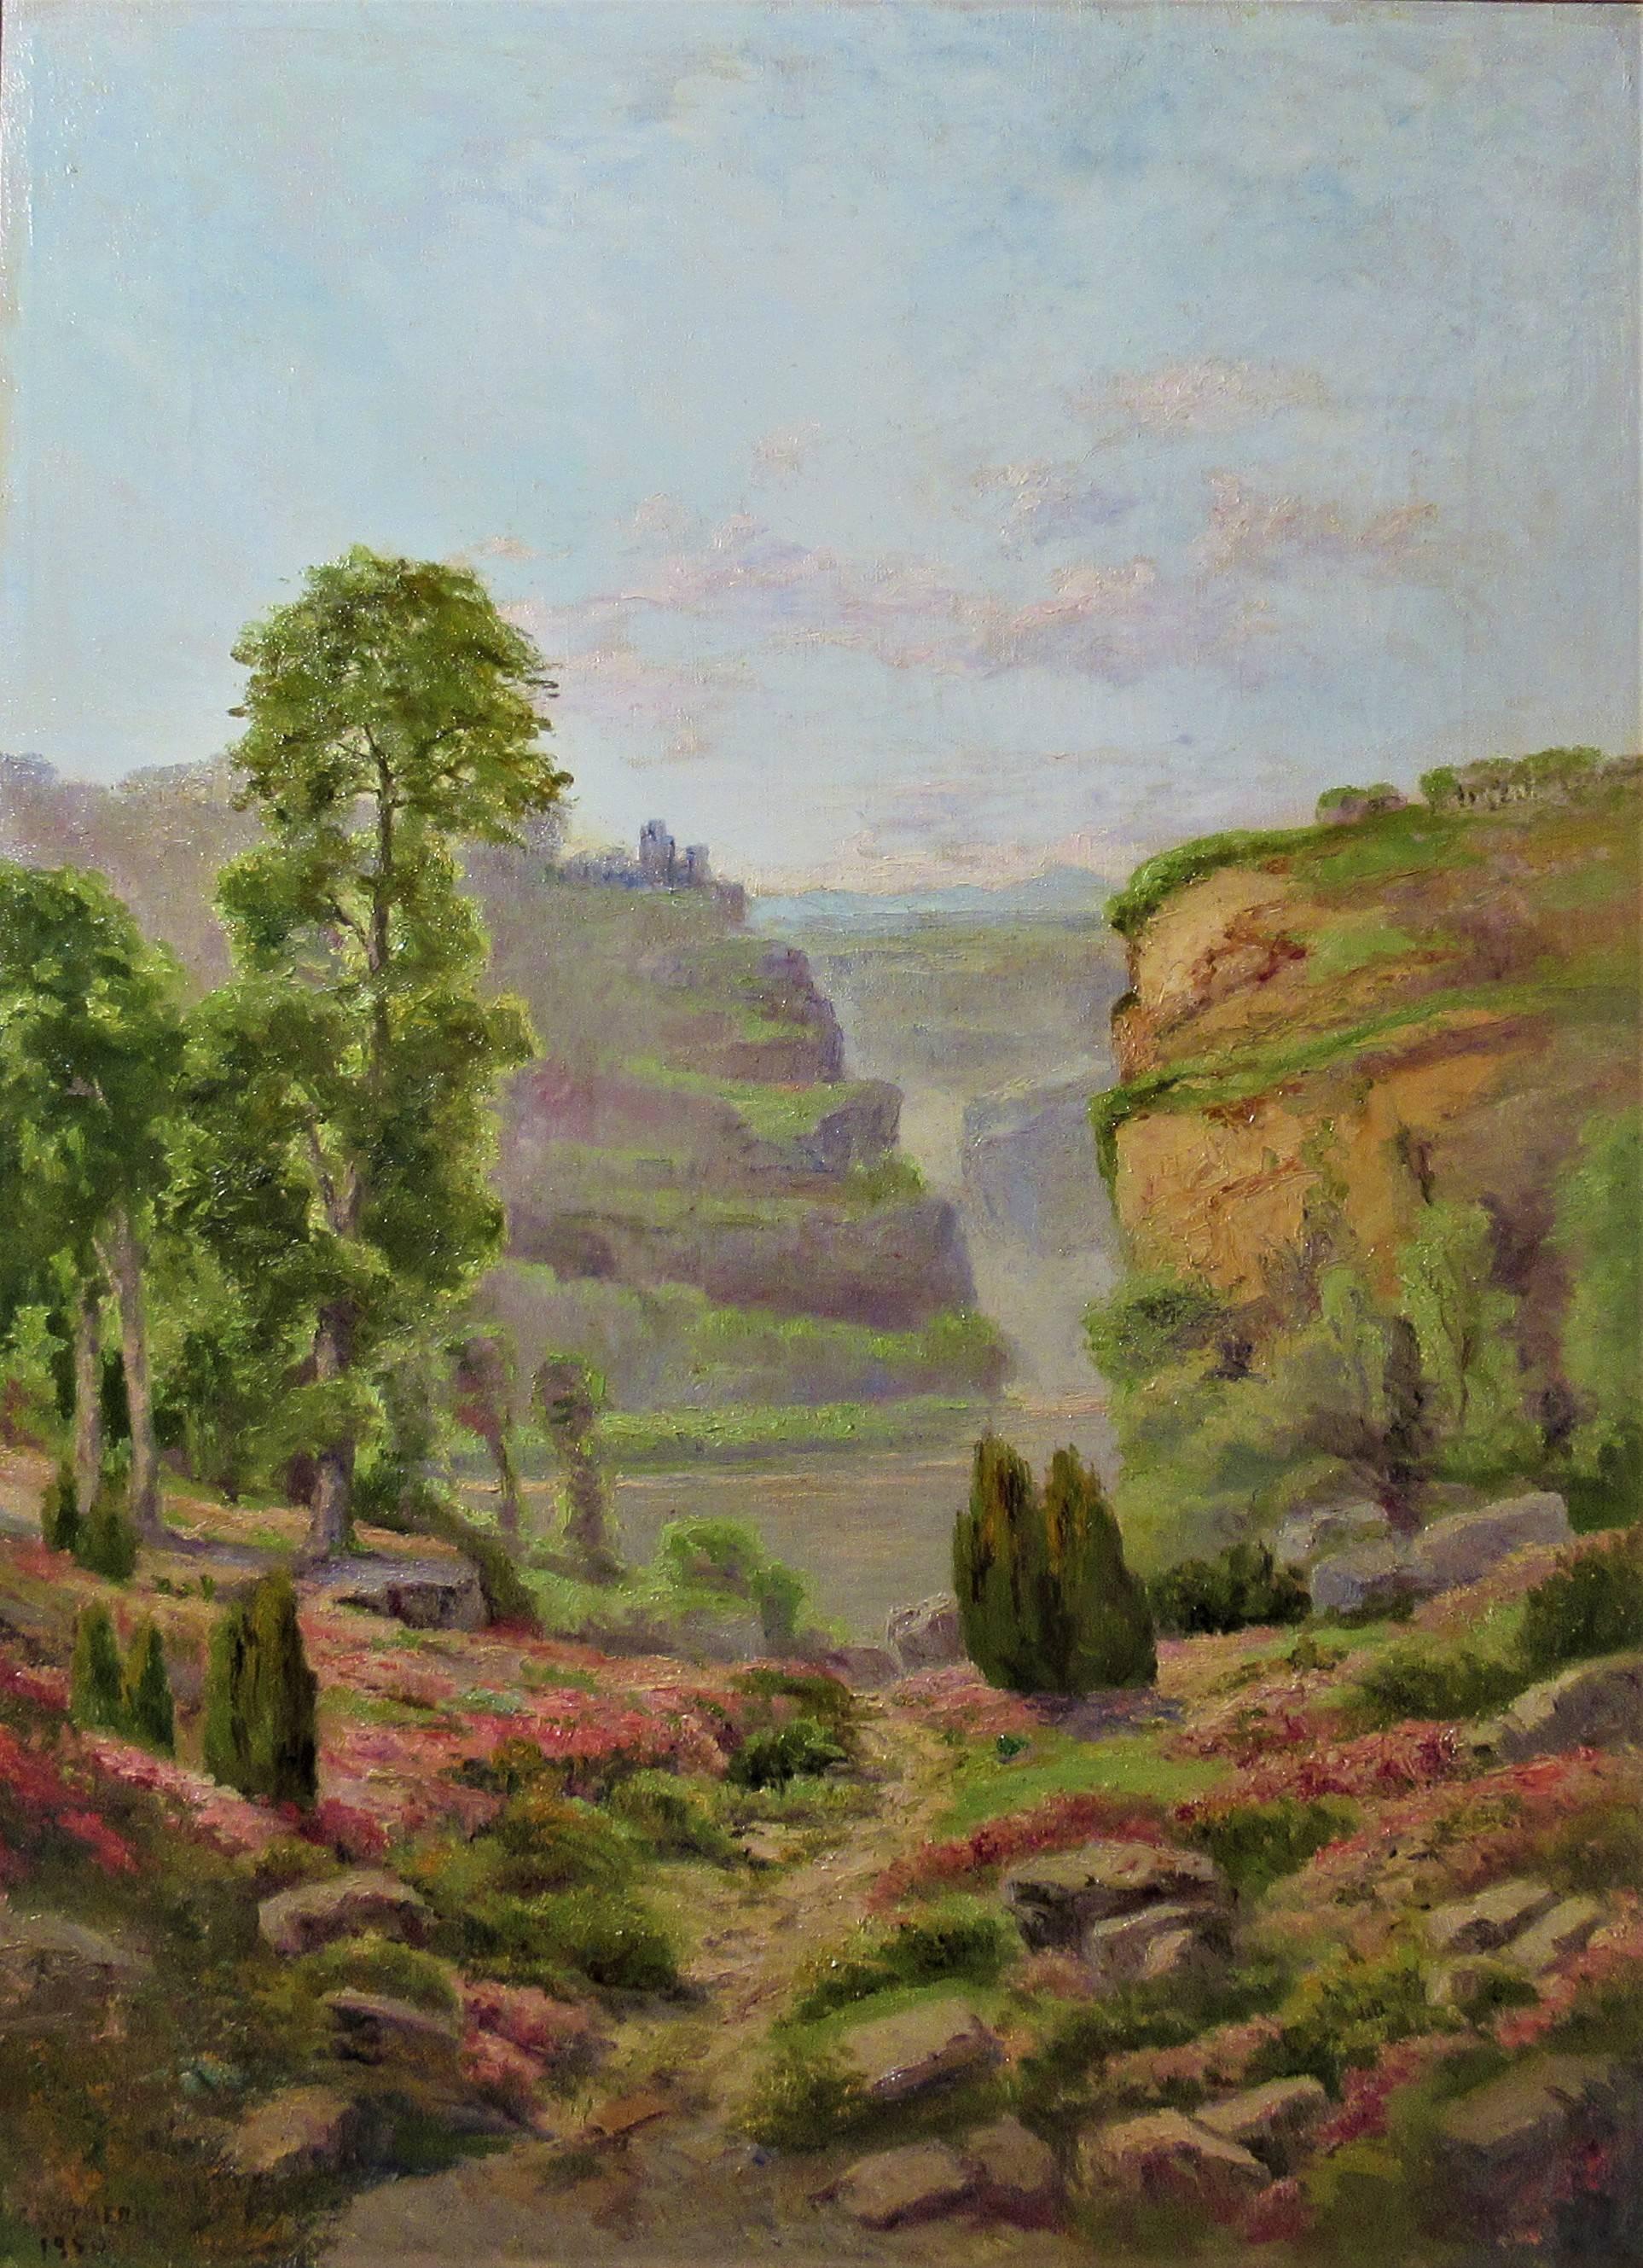 Landschaftslandschaft – Painting von Emile Xavier Gautheron 